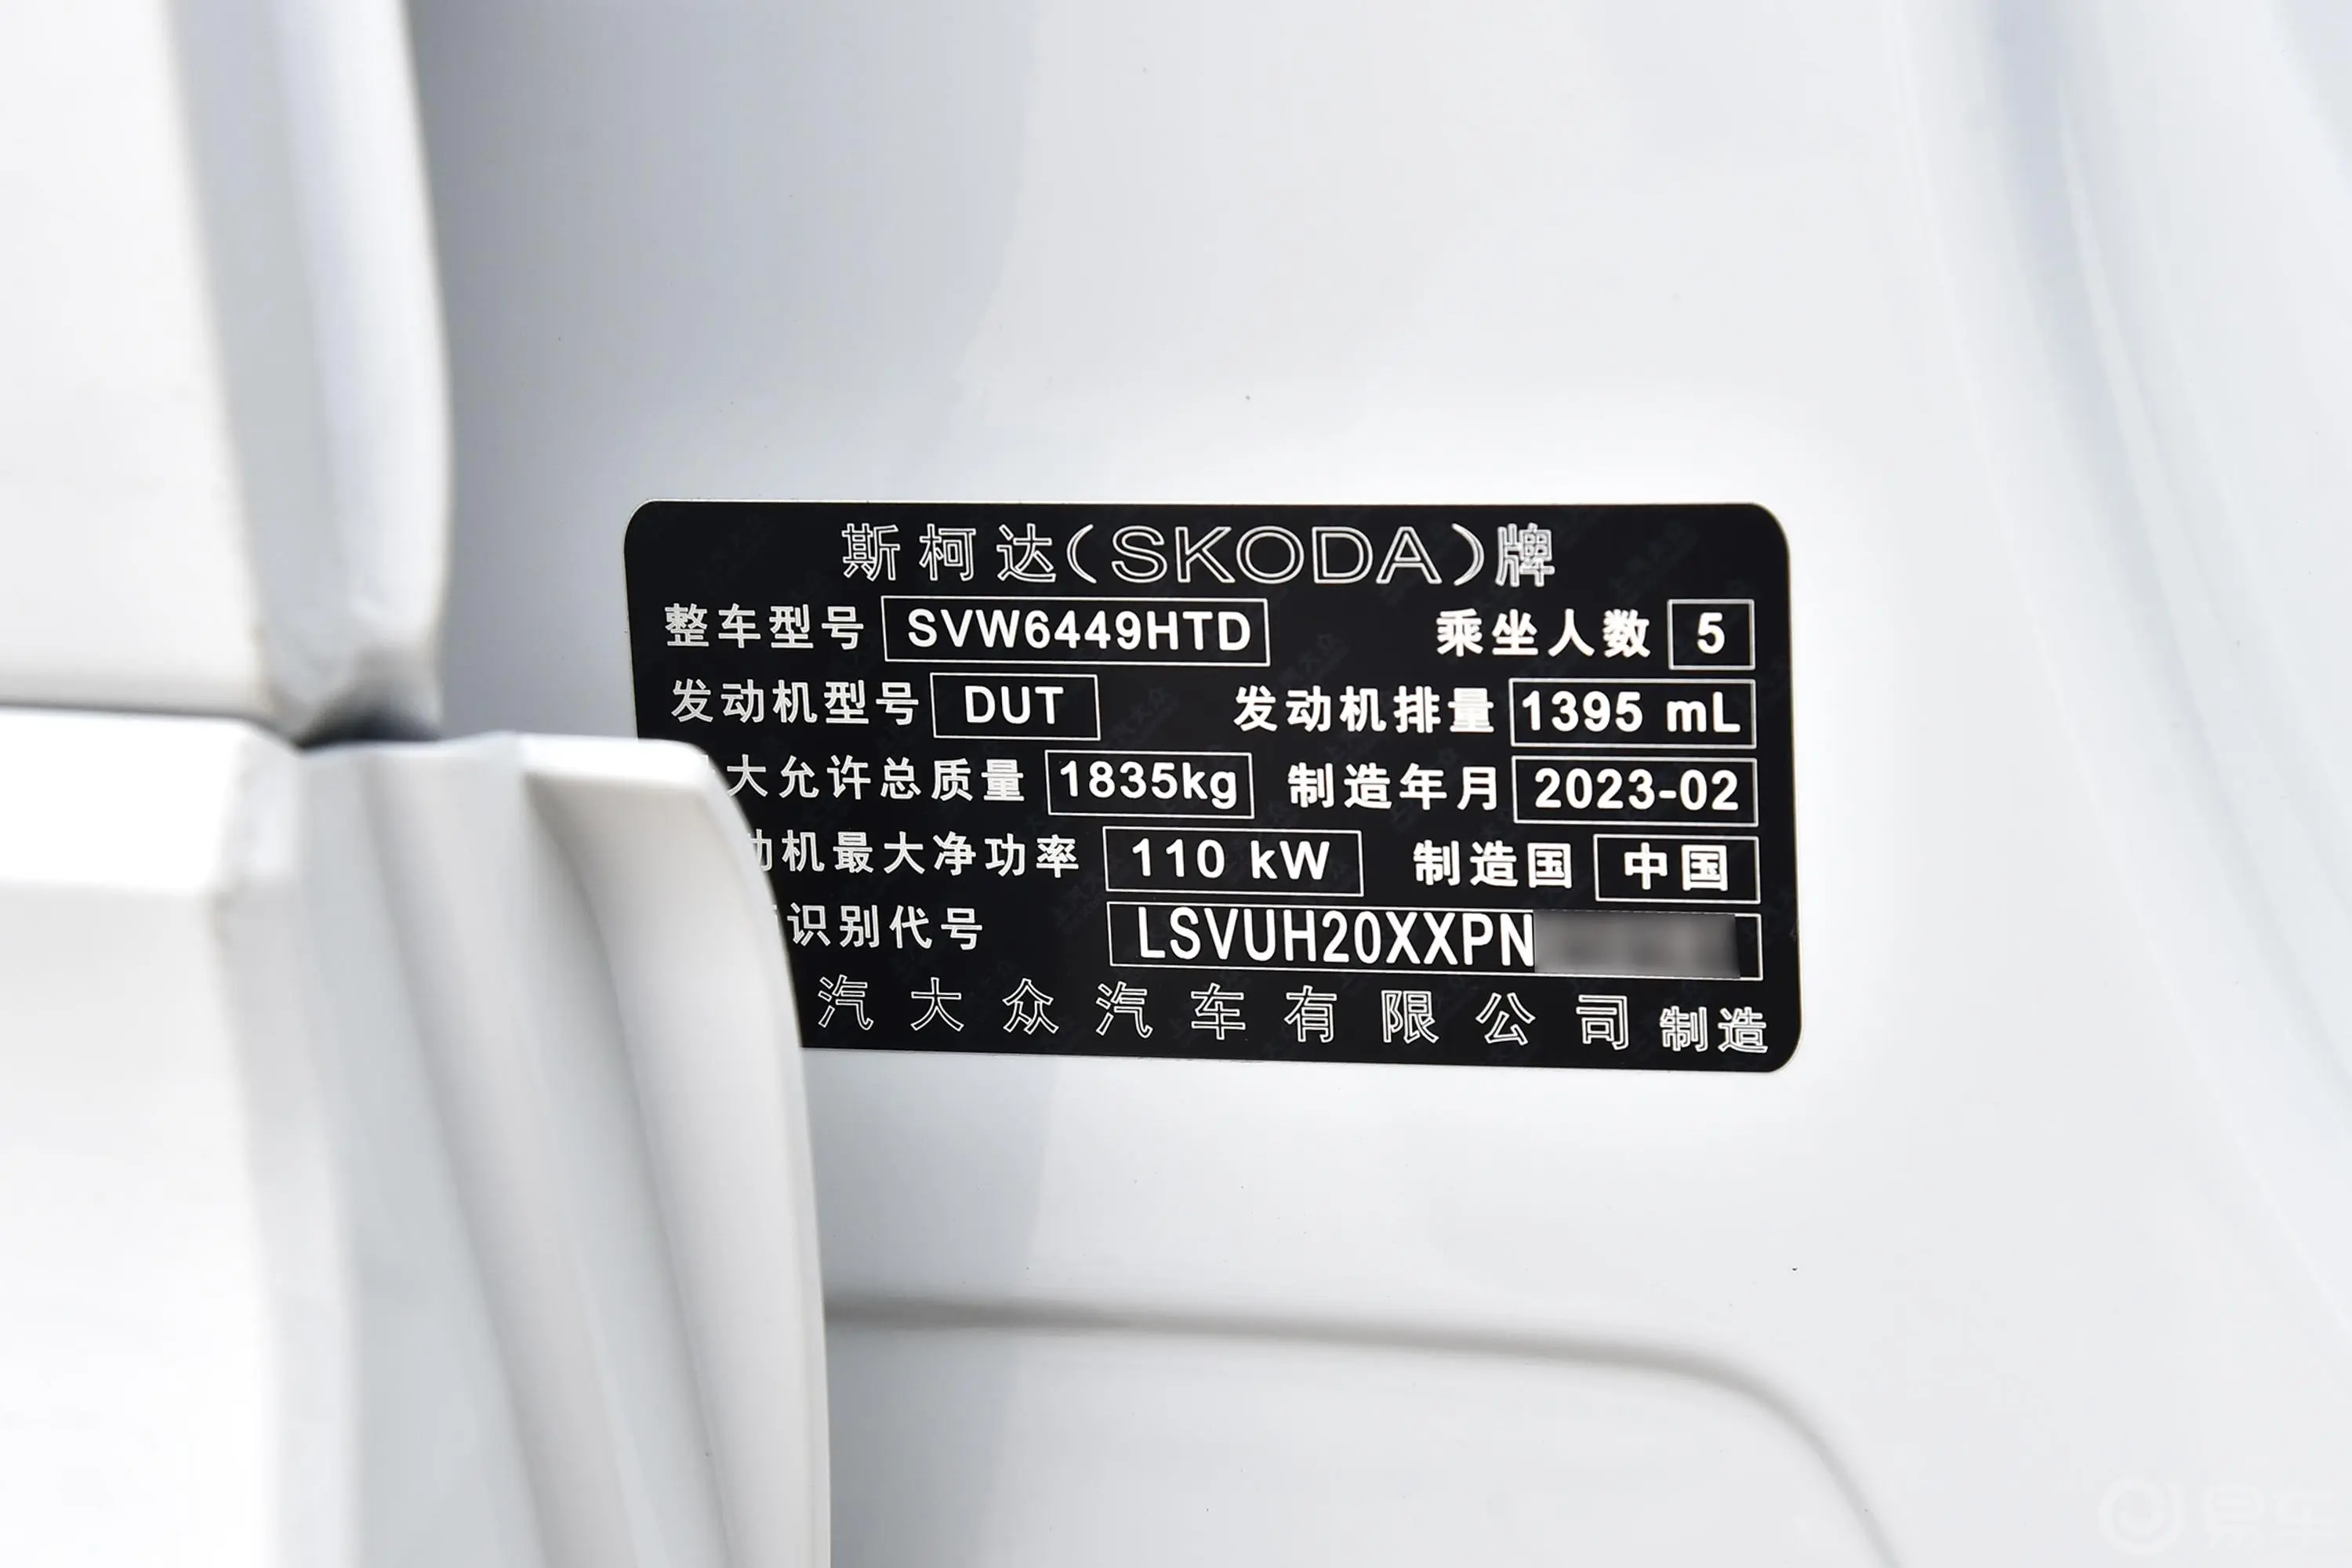 柯珞克TSI280 尊享版车辆信息铭牌